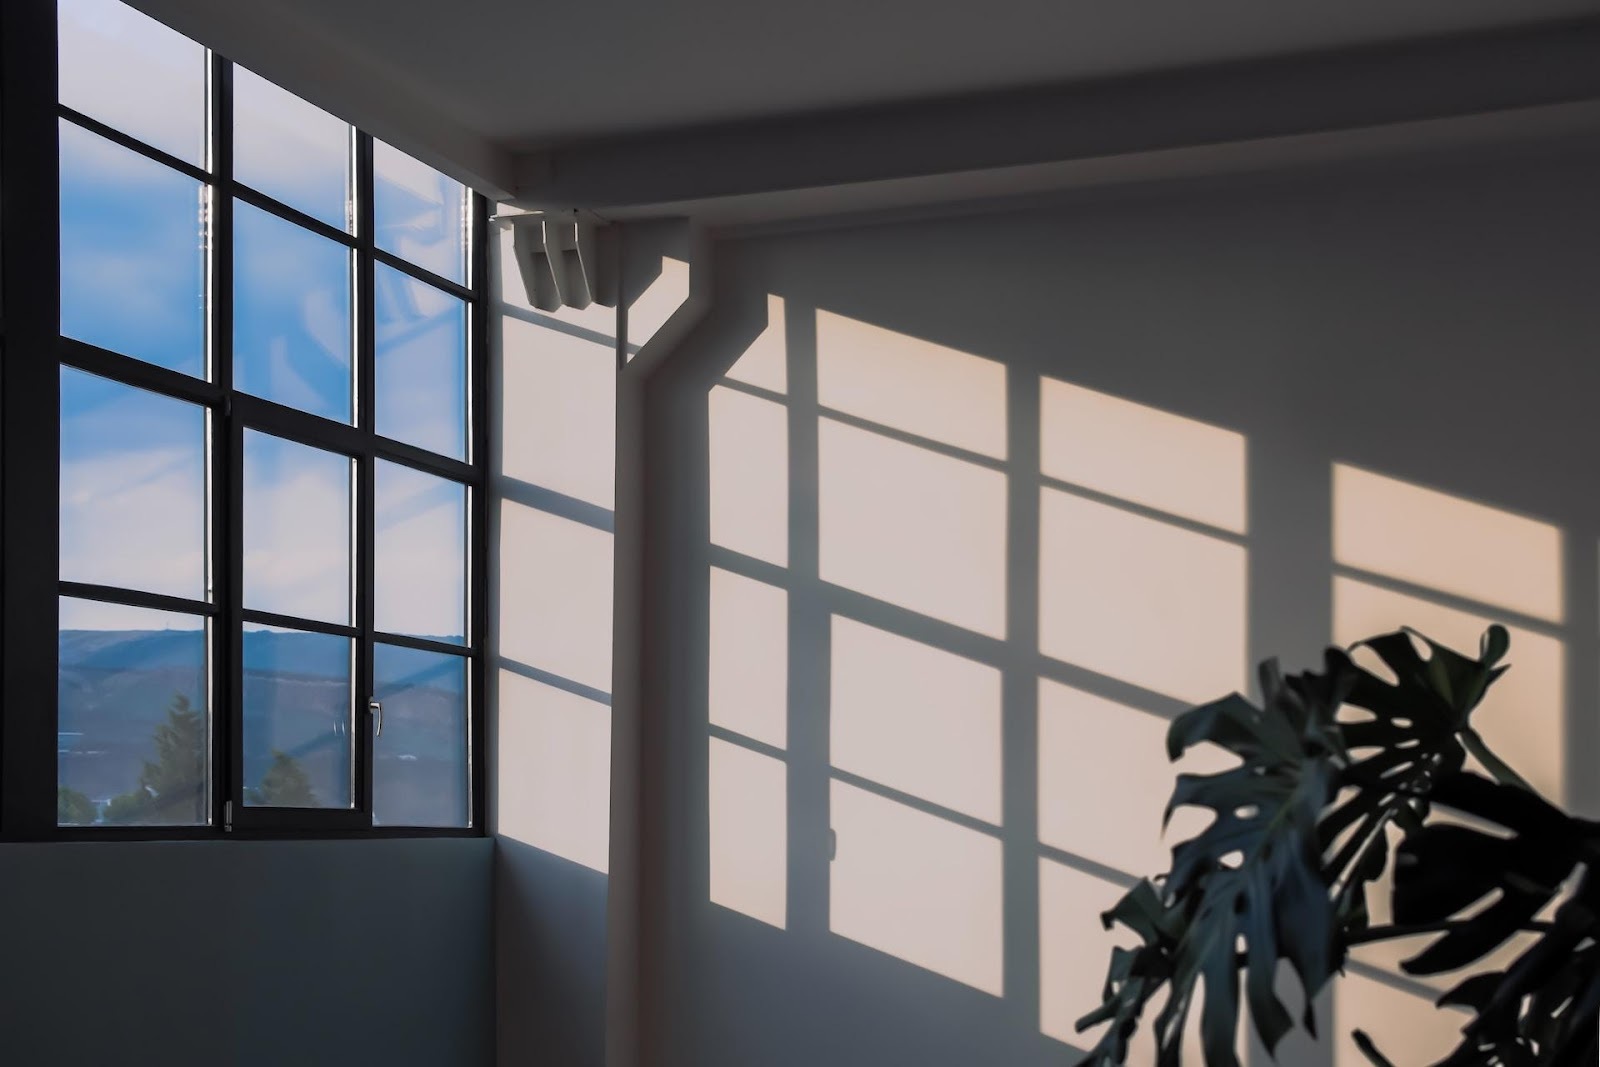 Comment améliorer l'isolation de ses fenêtres ?